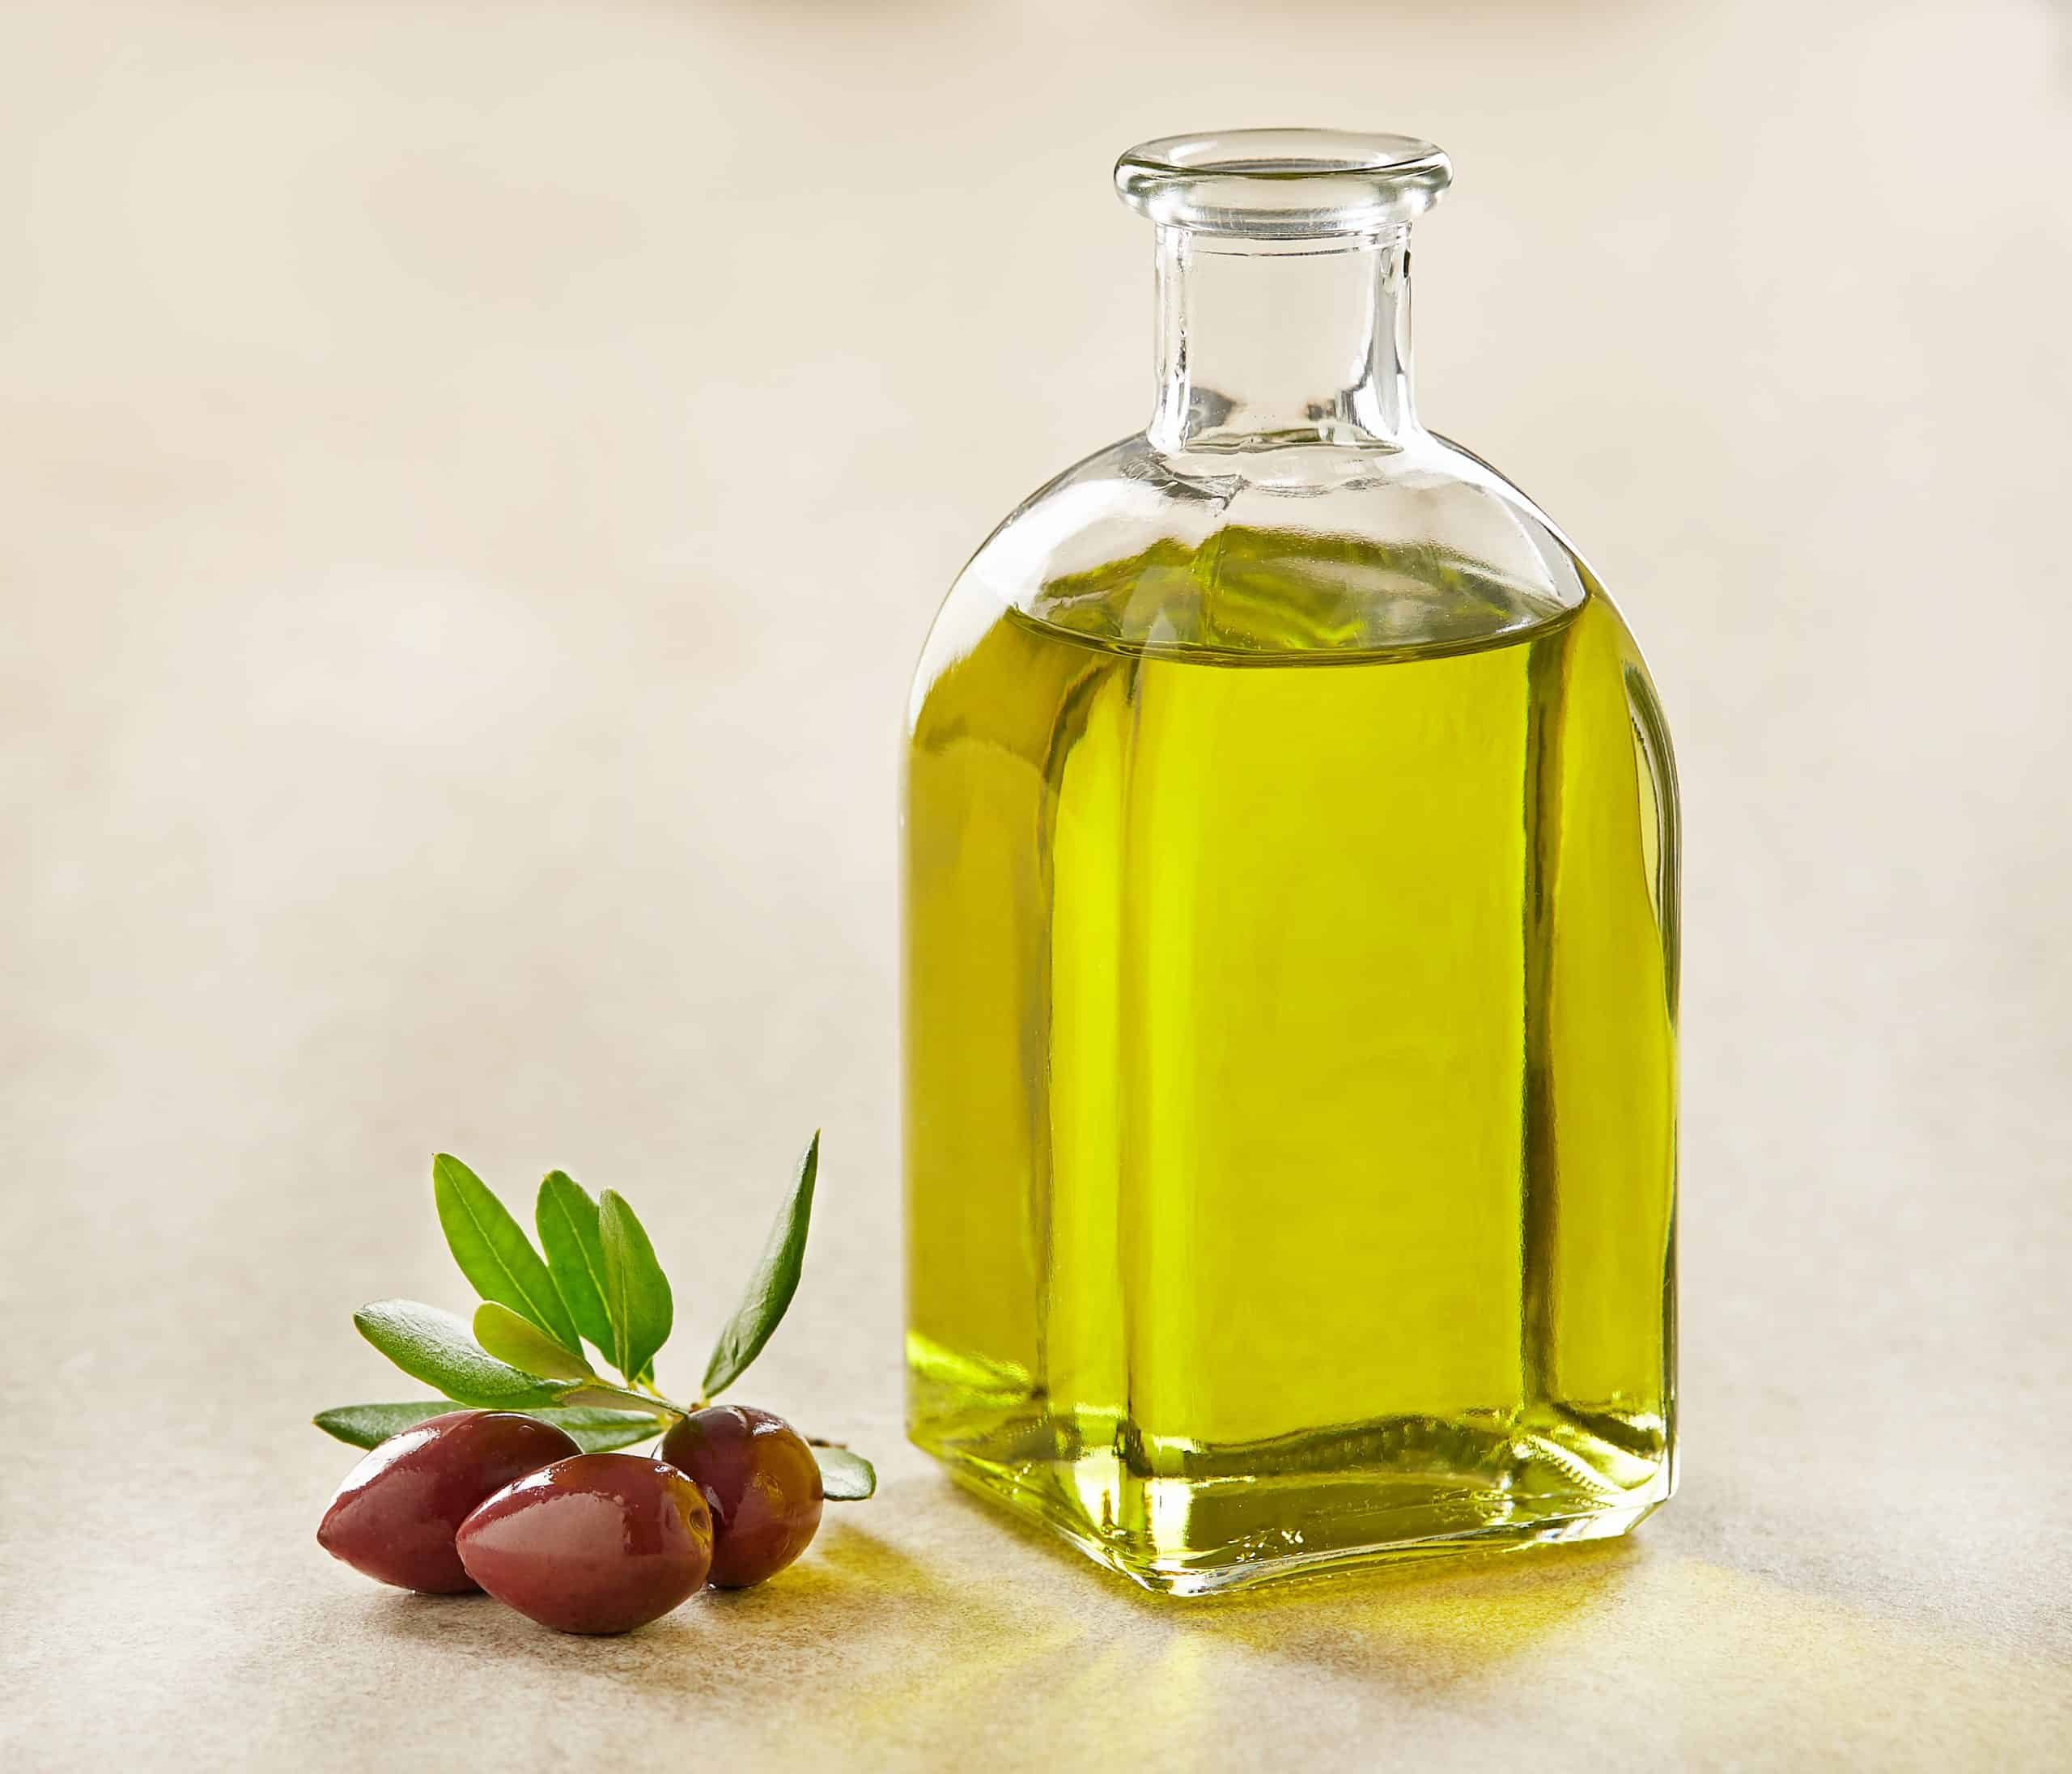 Mise en valeur de l’origine géographique sur l’étiquette : un atout pour l’huile d’olive